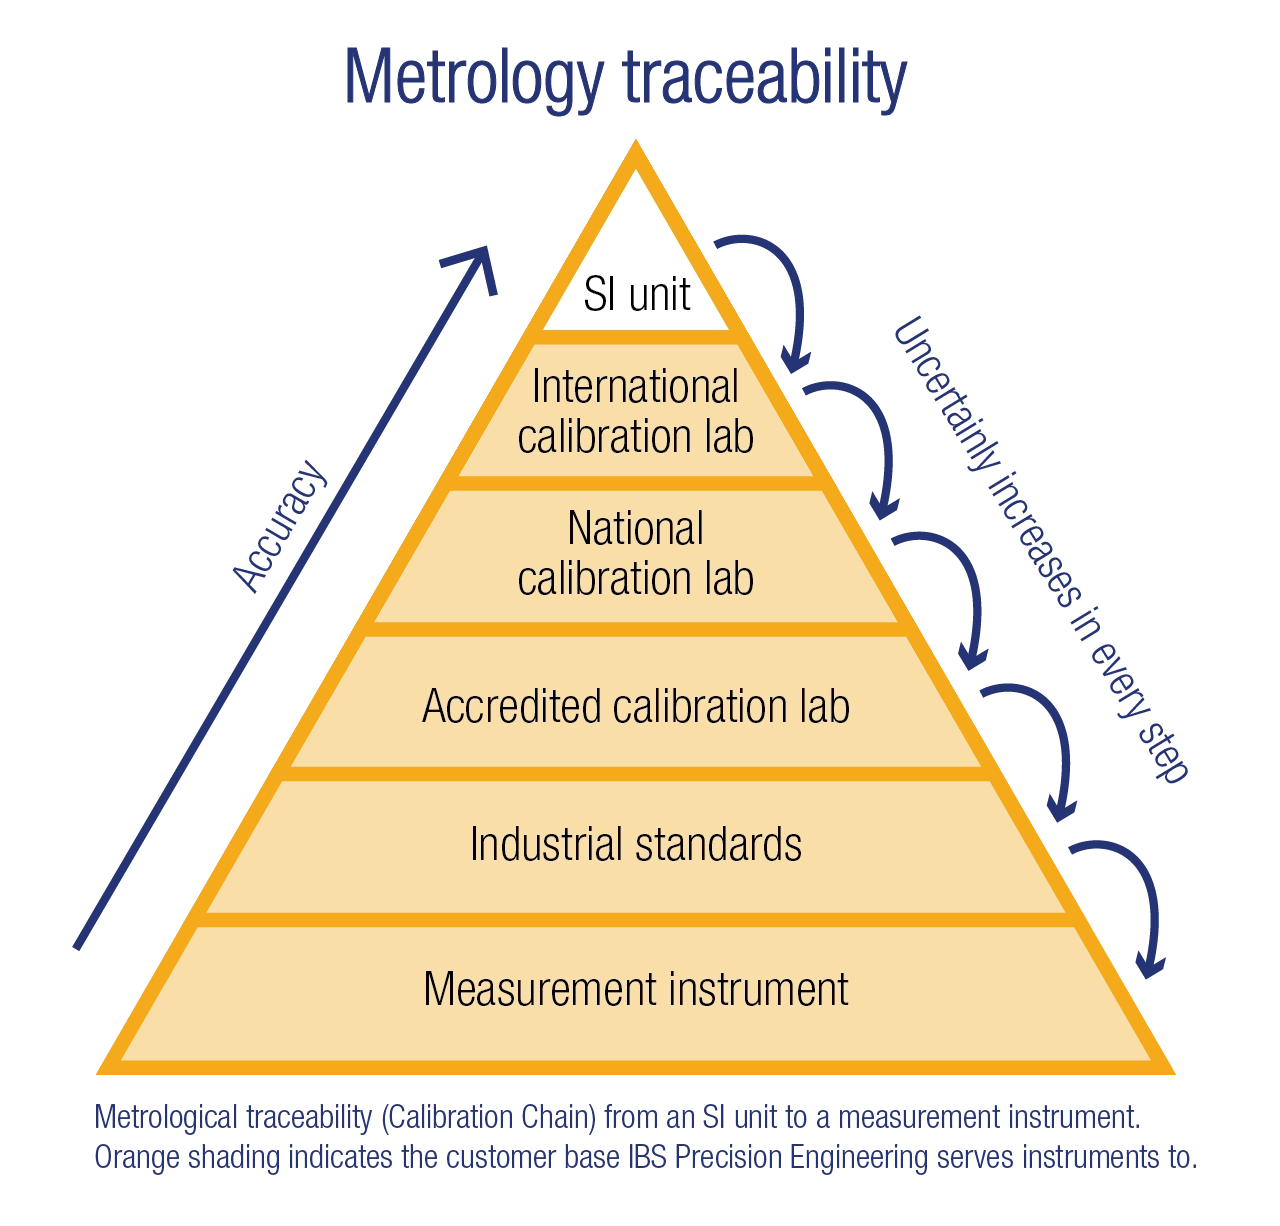 Metrology Traceability